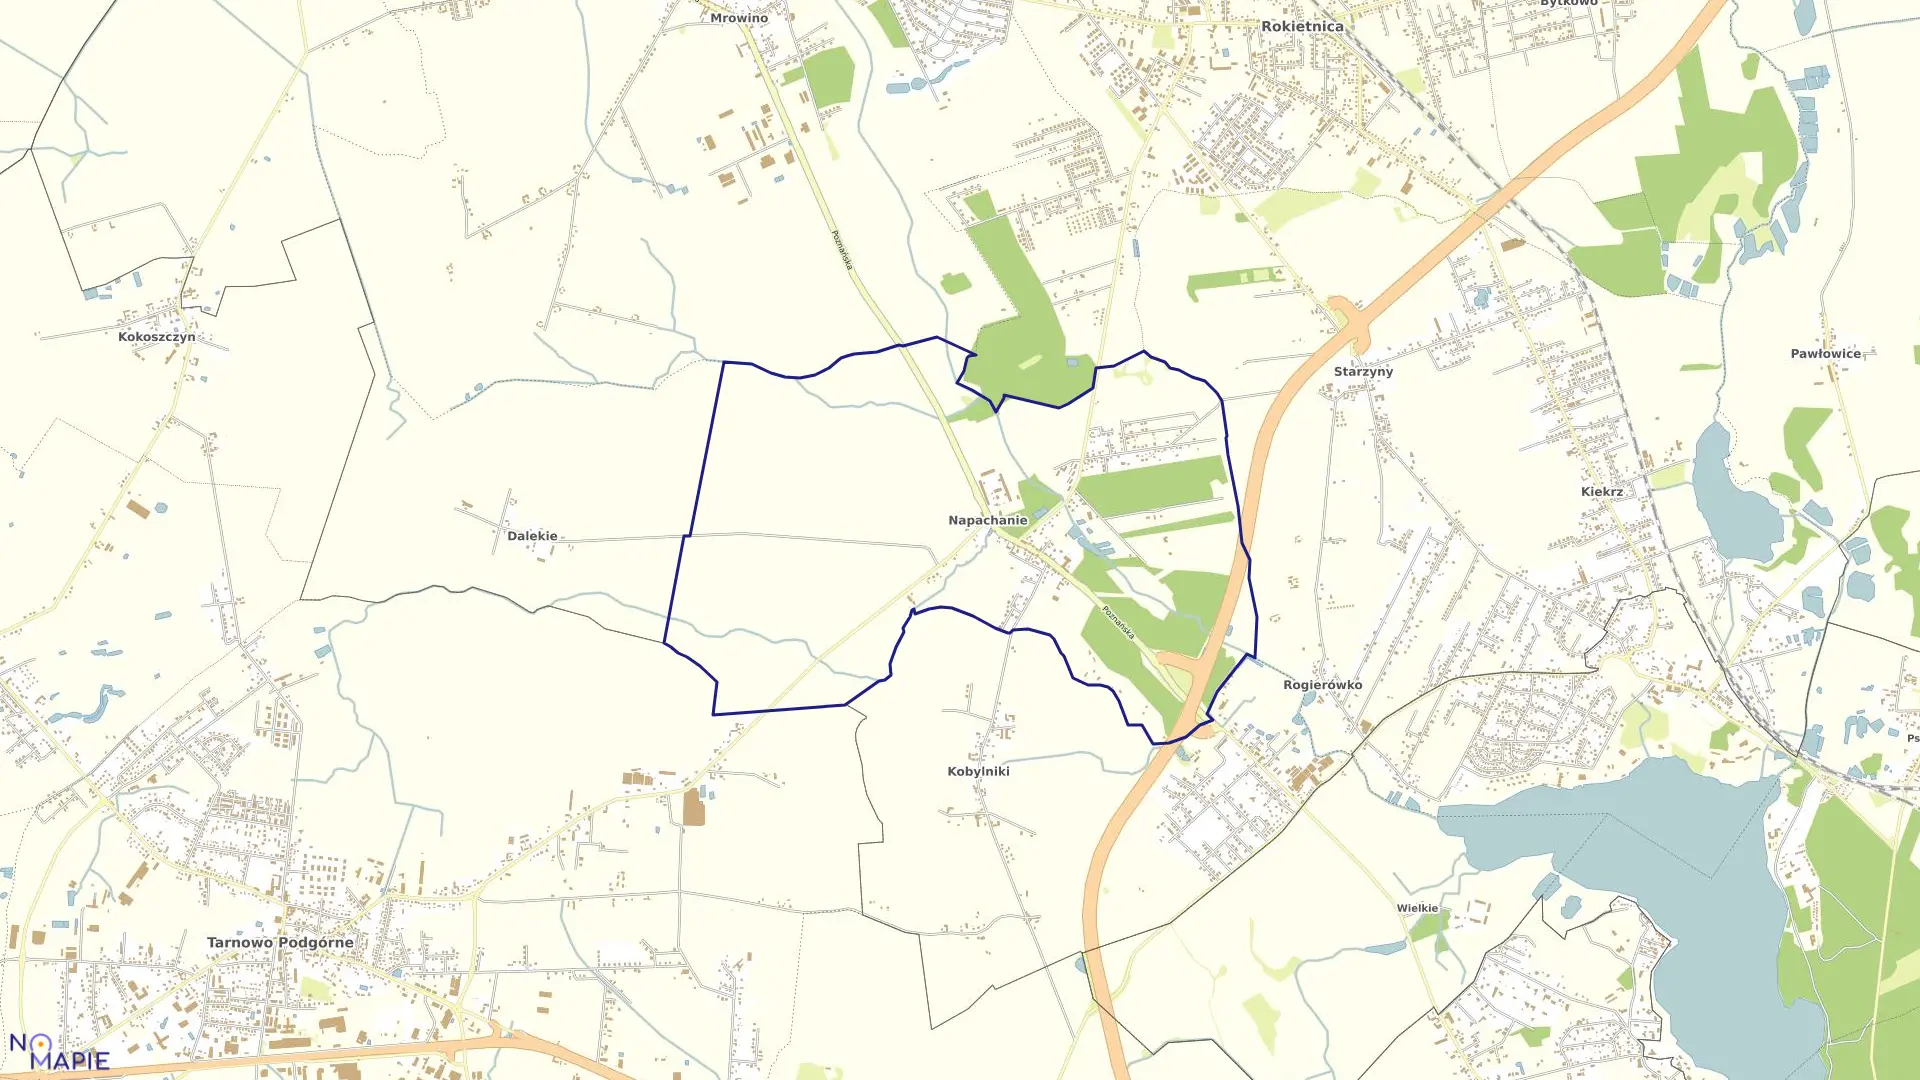 Mapa obrębu NAPACHANIE w gminie Rokietnica